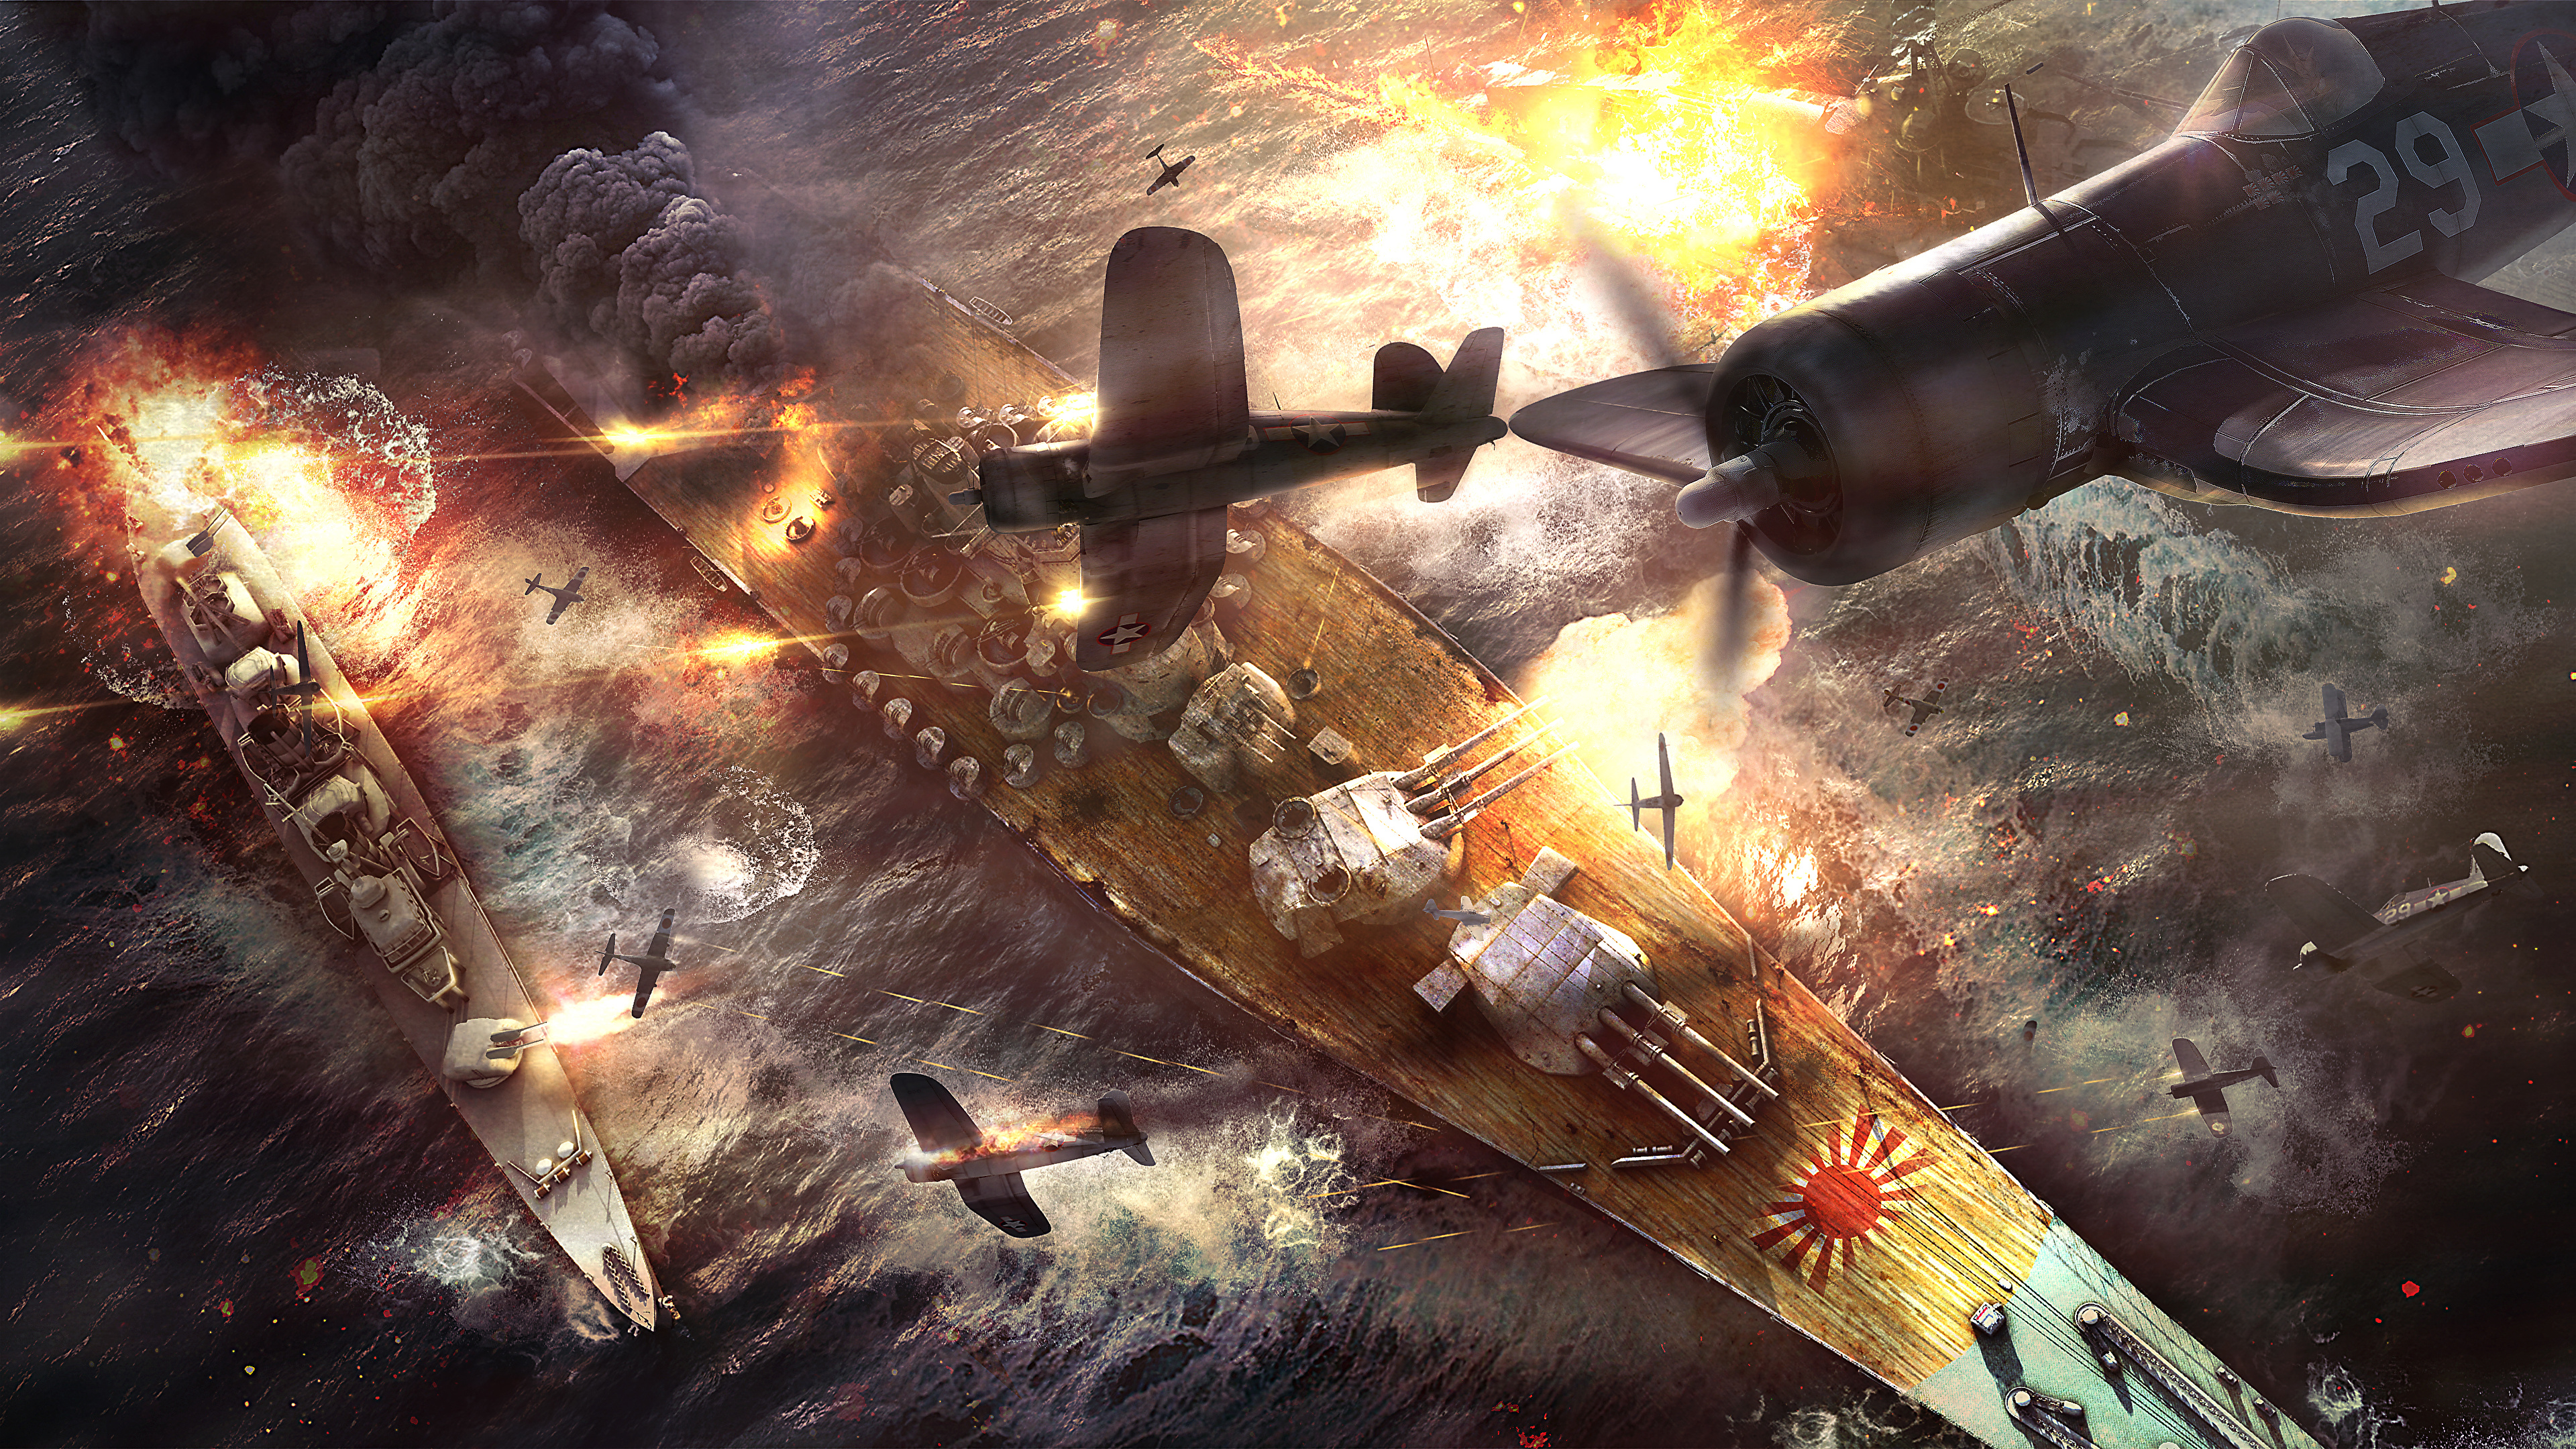 Fondos De Pantalla 3840x2160 War Thunder Avions Barco Battle Of Okinawa Japones Americano Juegos Descargar Imagenes